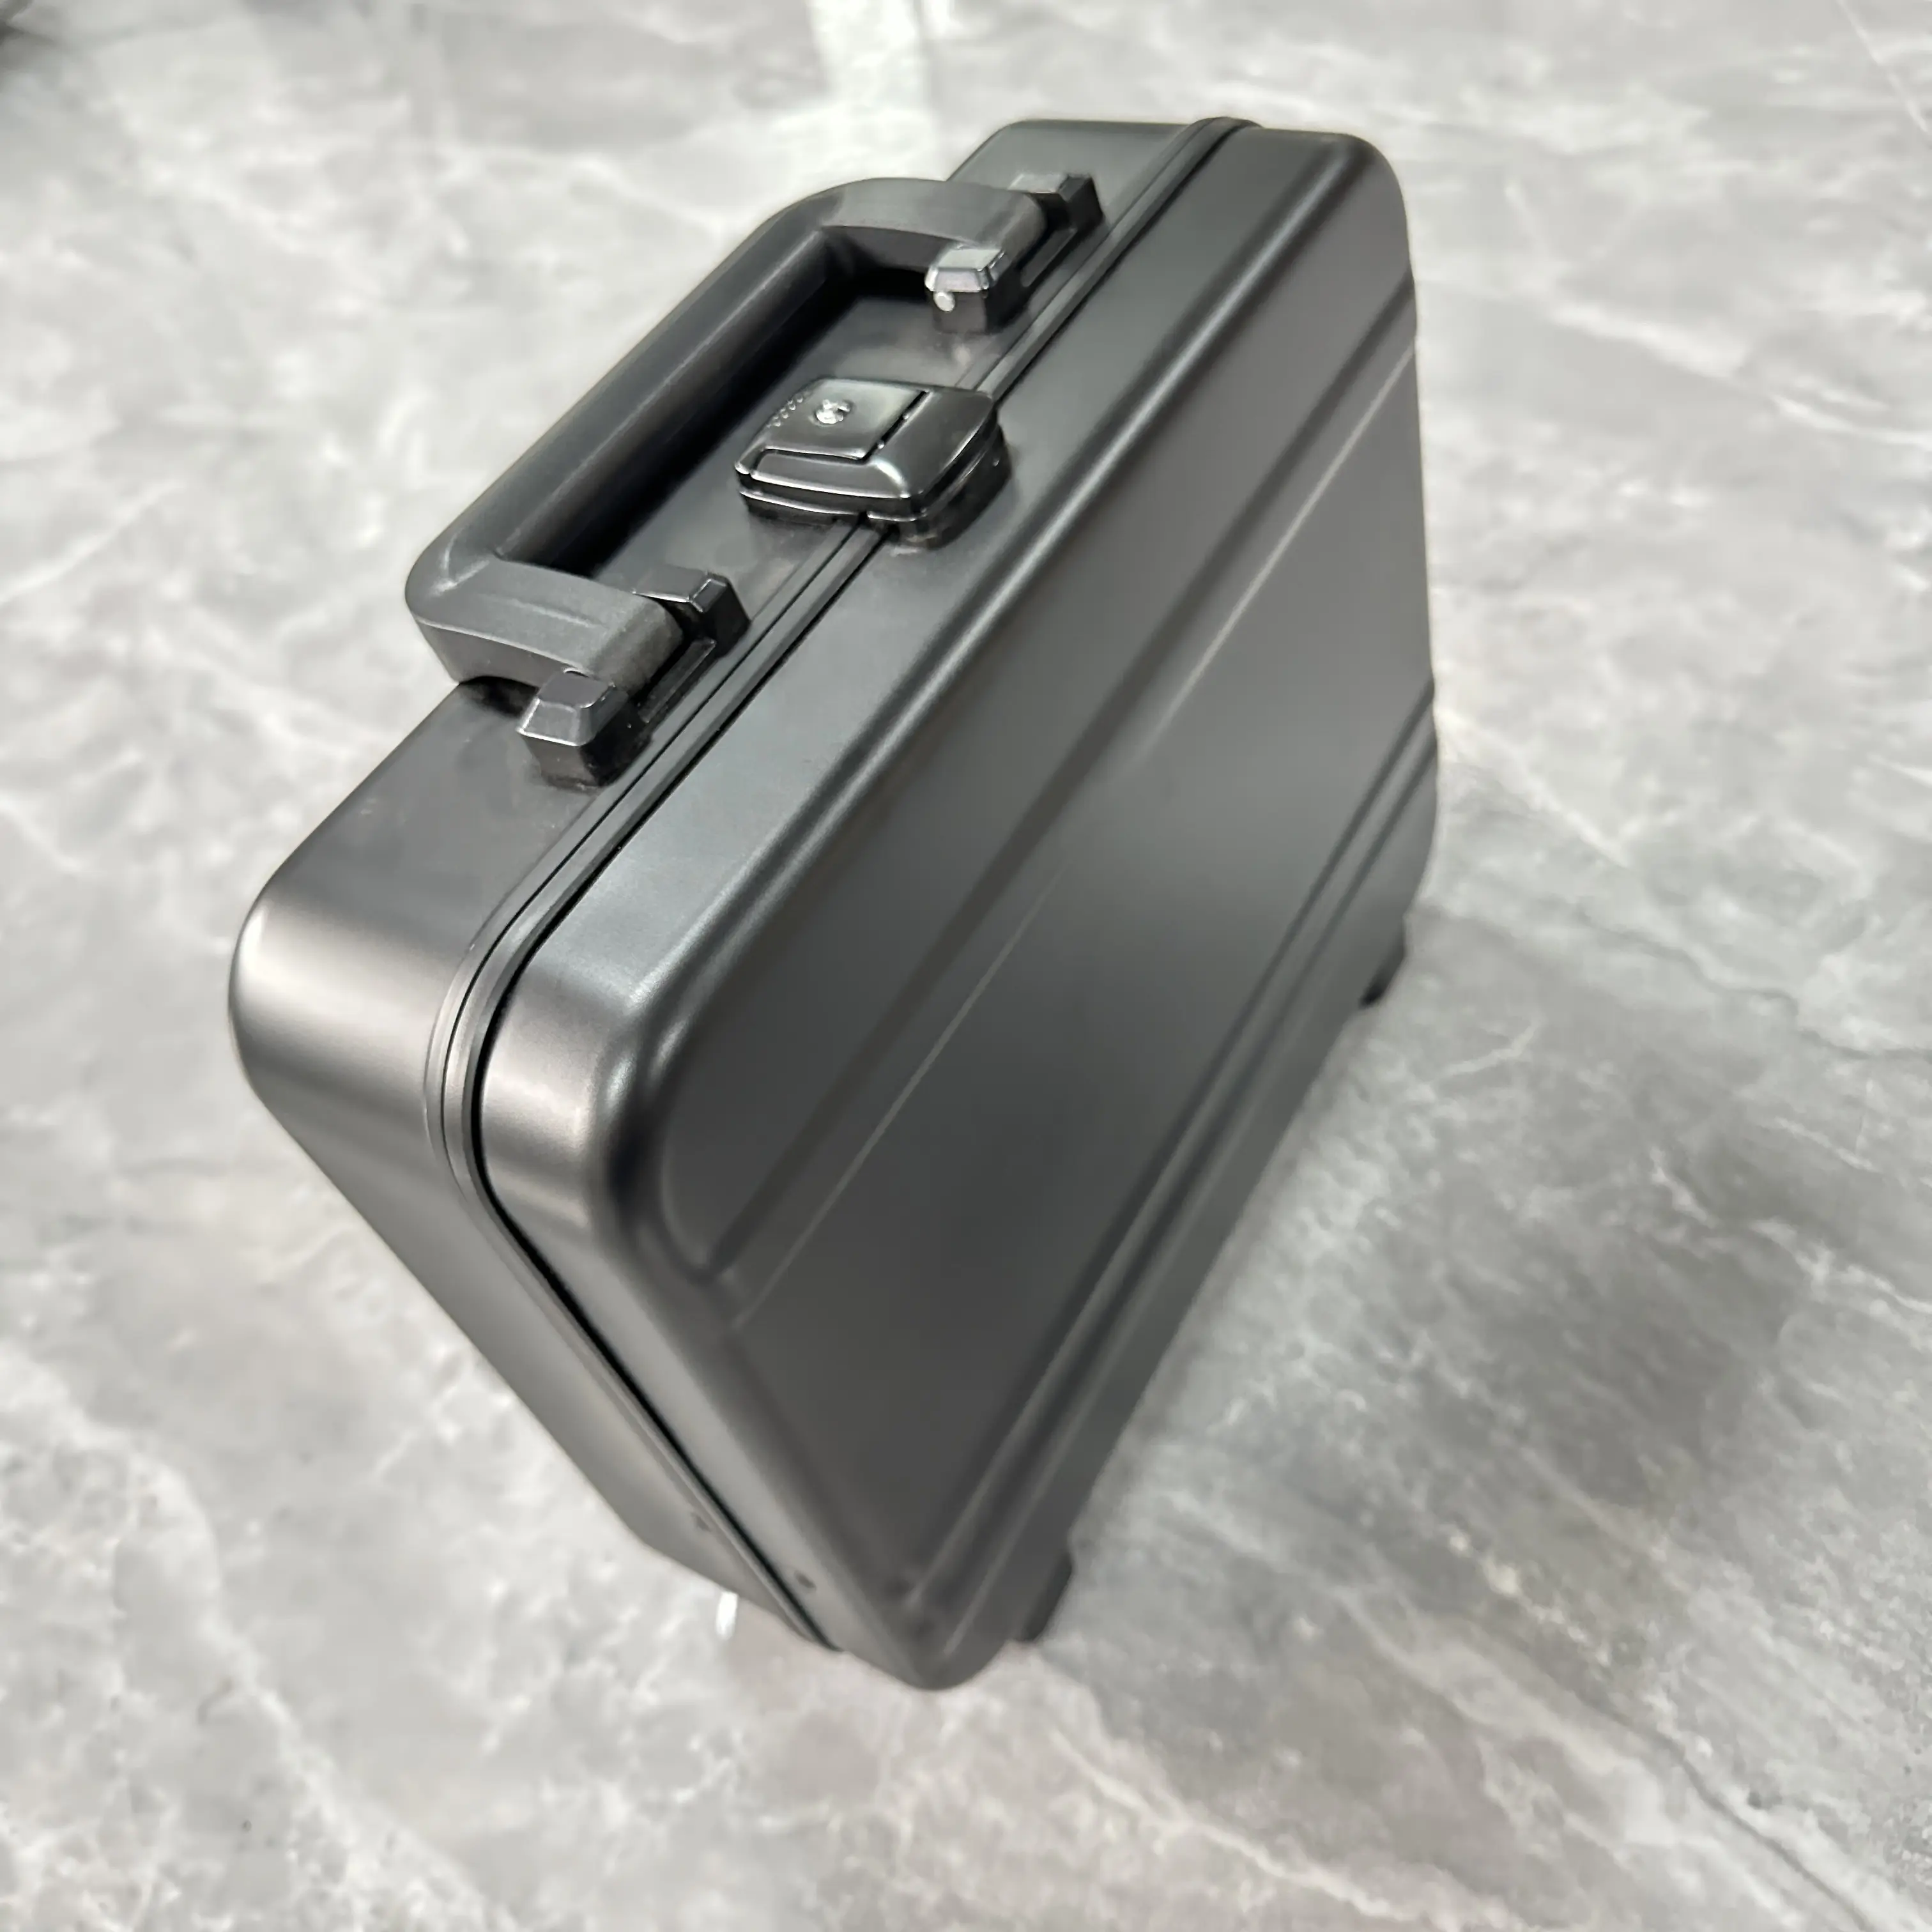 Su geçirmez caja para camera je kamera kartı izle depolama evrak çantası amplifikatör uçuş durumda sert taşıma kutuları alüminyum alet kılıfı